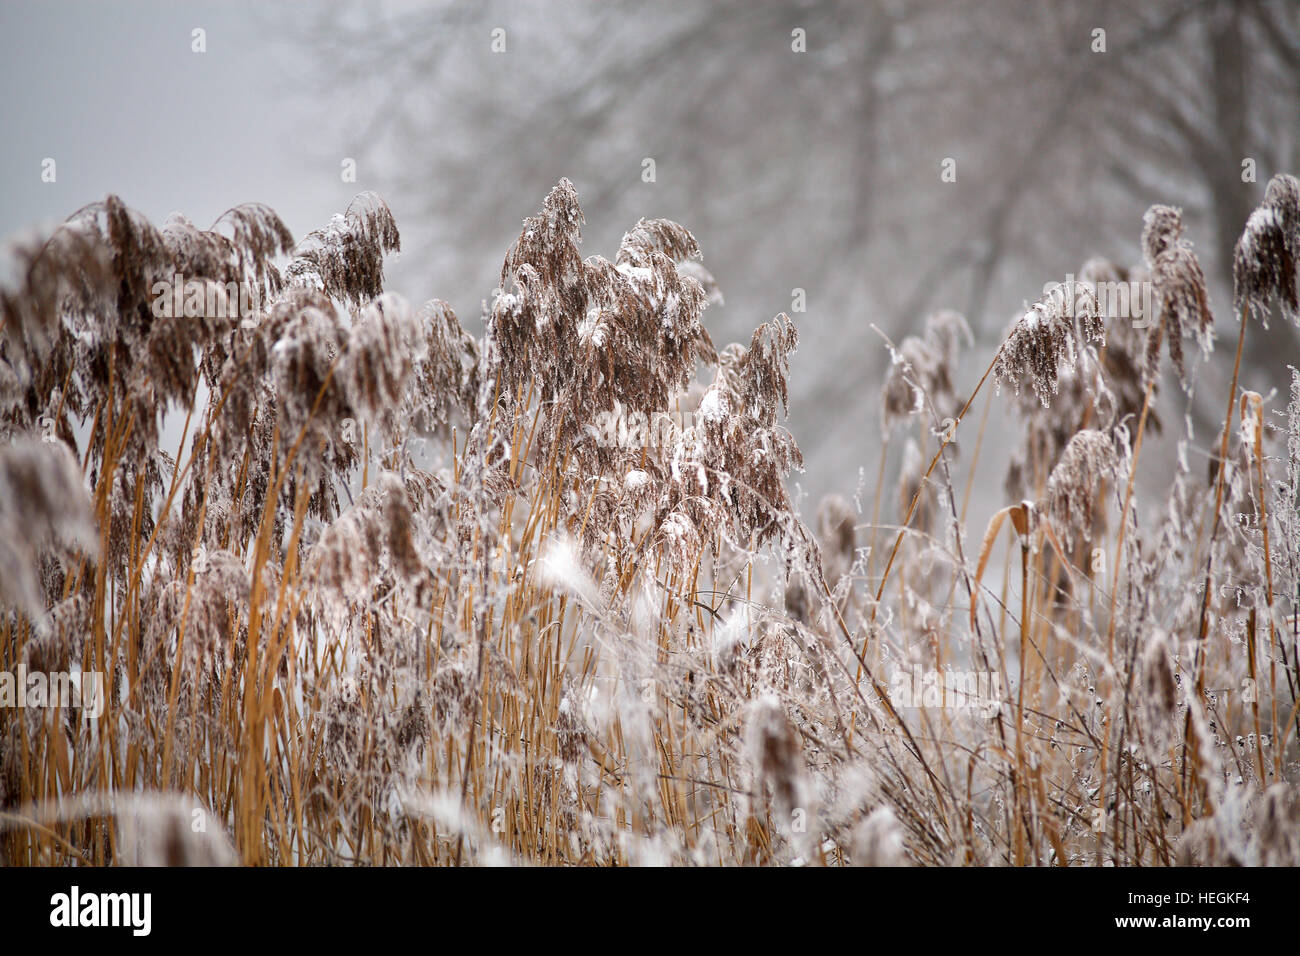 La neige et le givre sur la canne à sucre et l'herbe sur une rivière gelée misty. Misty d'hiver nuageux temps de neige. Banque D'Images